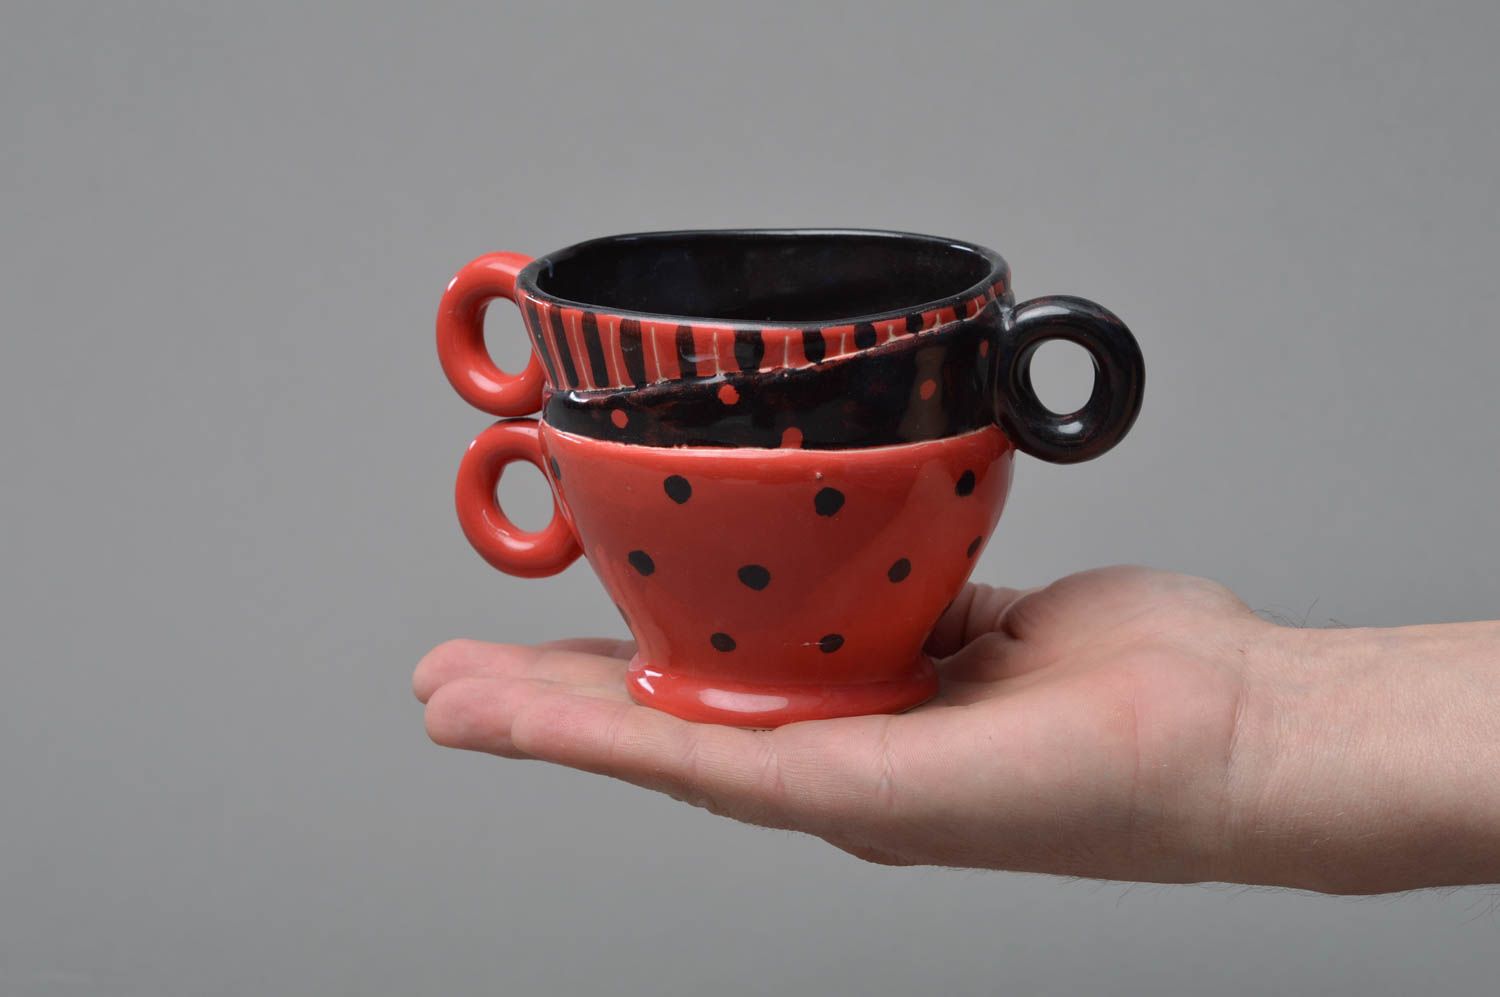 Schöne kreative handmade Tasse aus Porzellan ungewöhnlicher Form rot schwarz foto 4